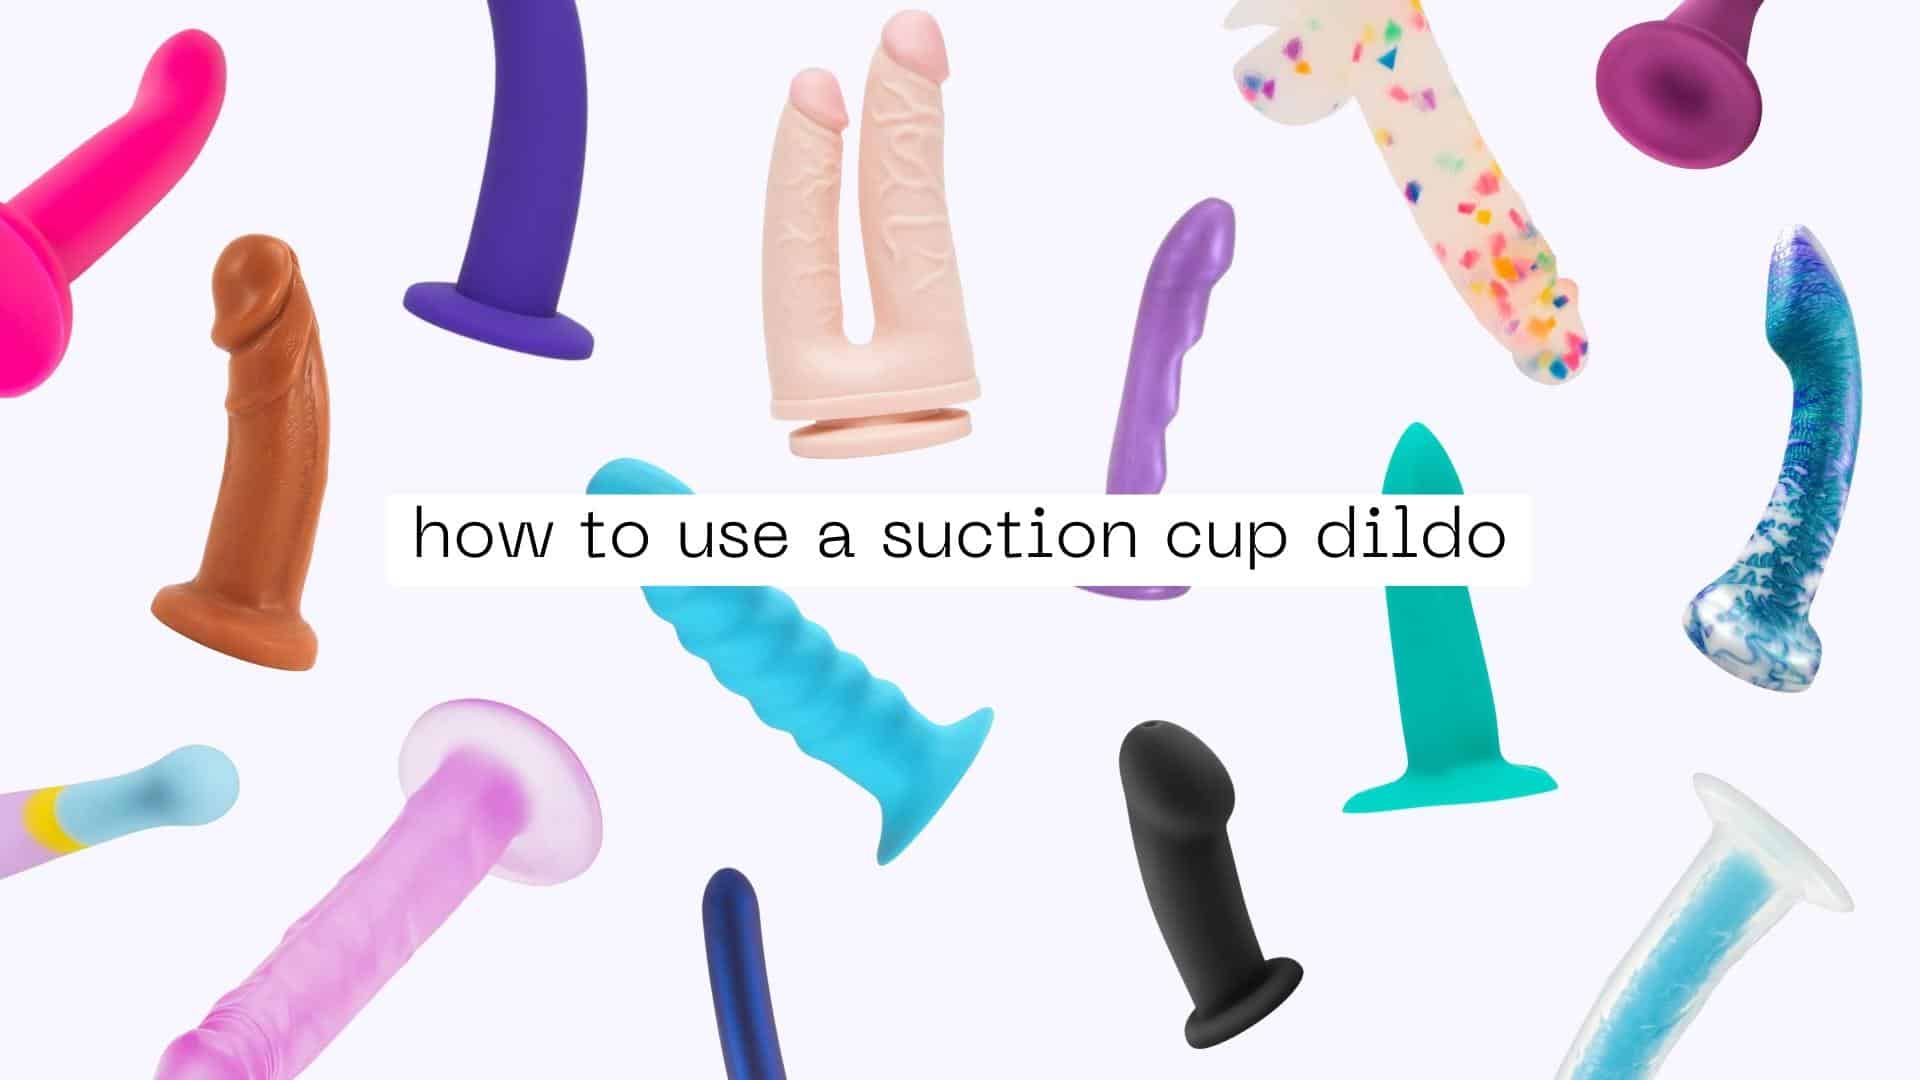 arjay del mundo share how to use a suction dildo photos